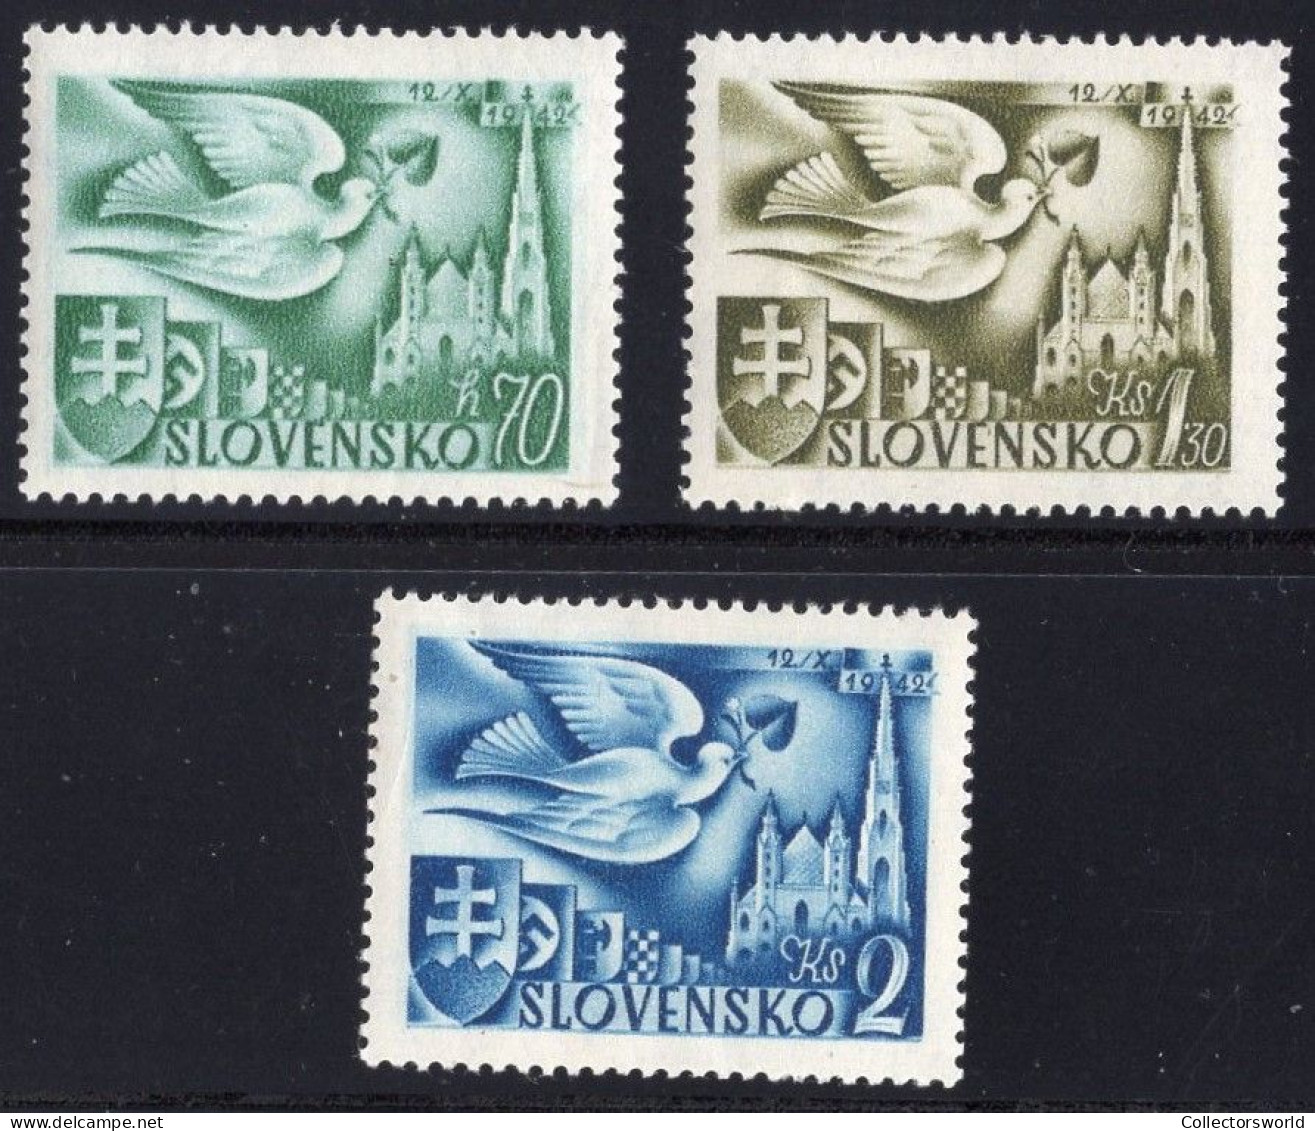 Slovakia Slovensko Serie 3v 1942 European Postal Congress - Dove Pigeon MNH - Ongebruikt